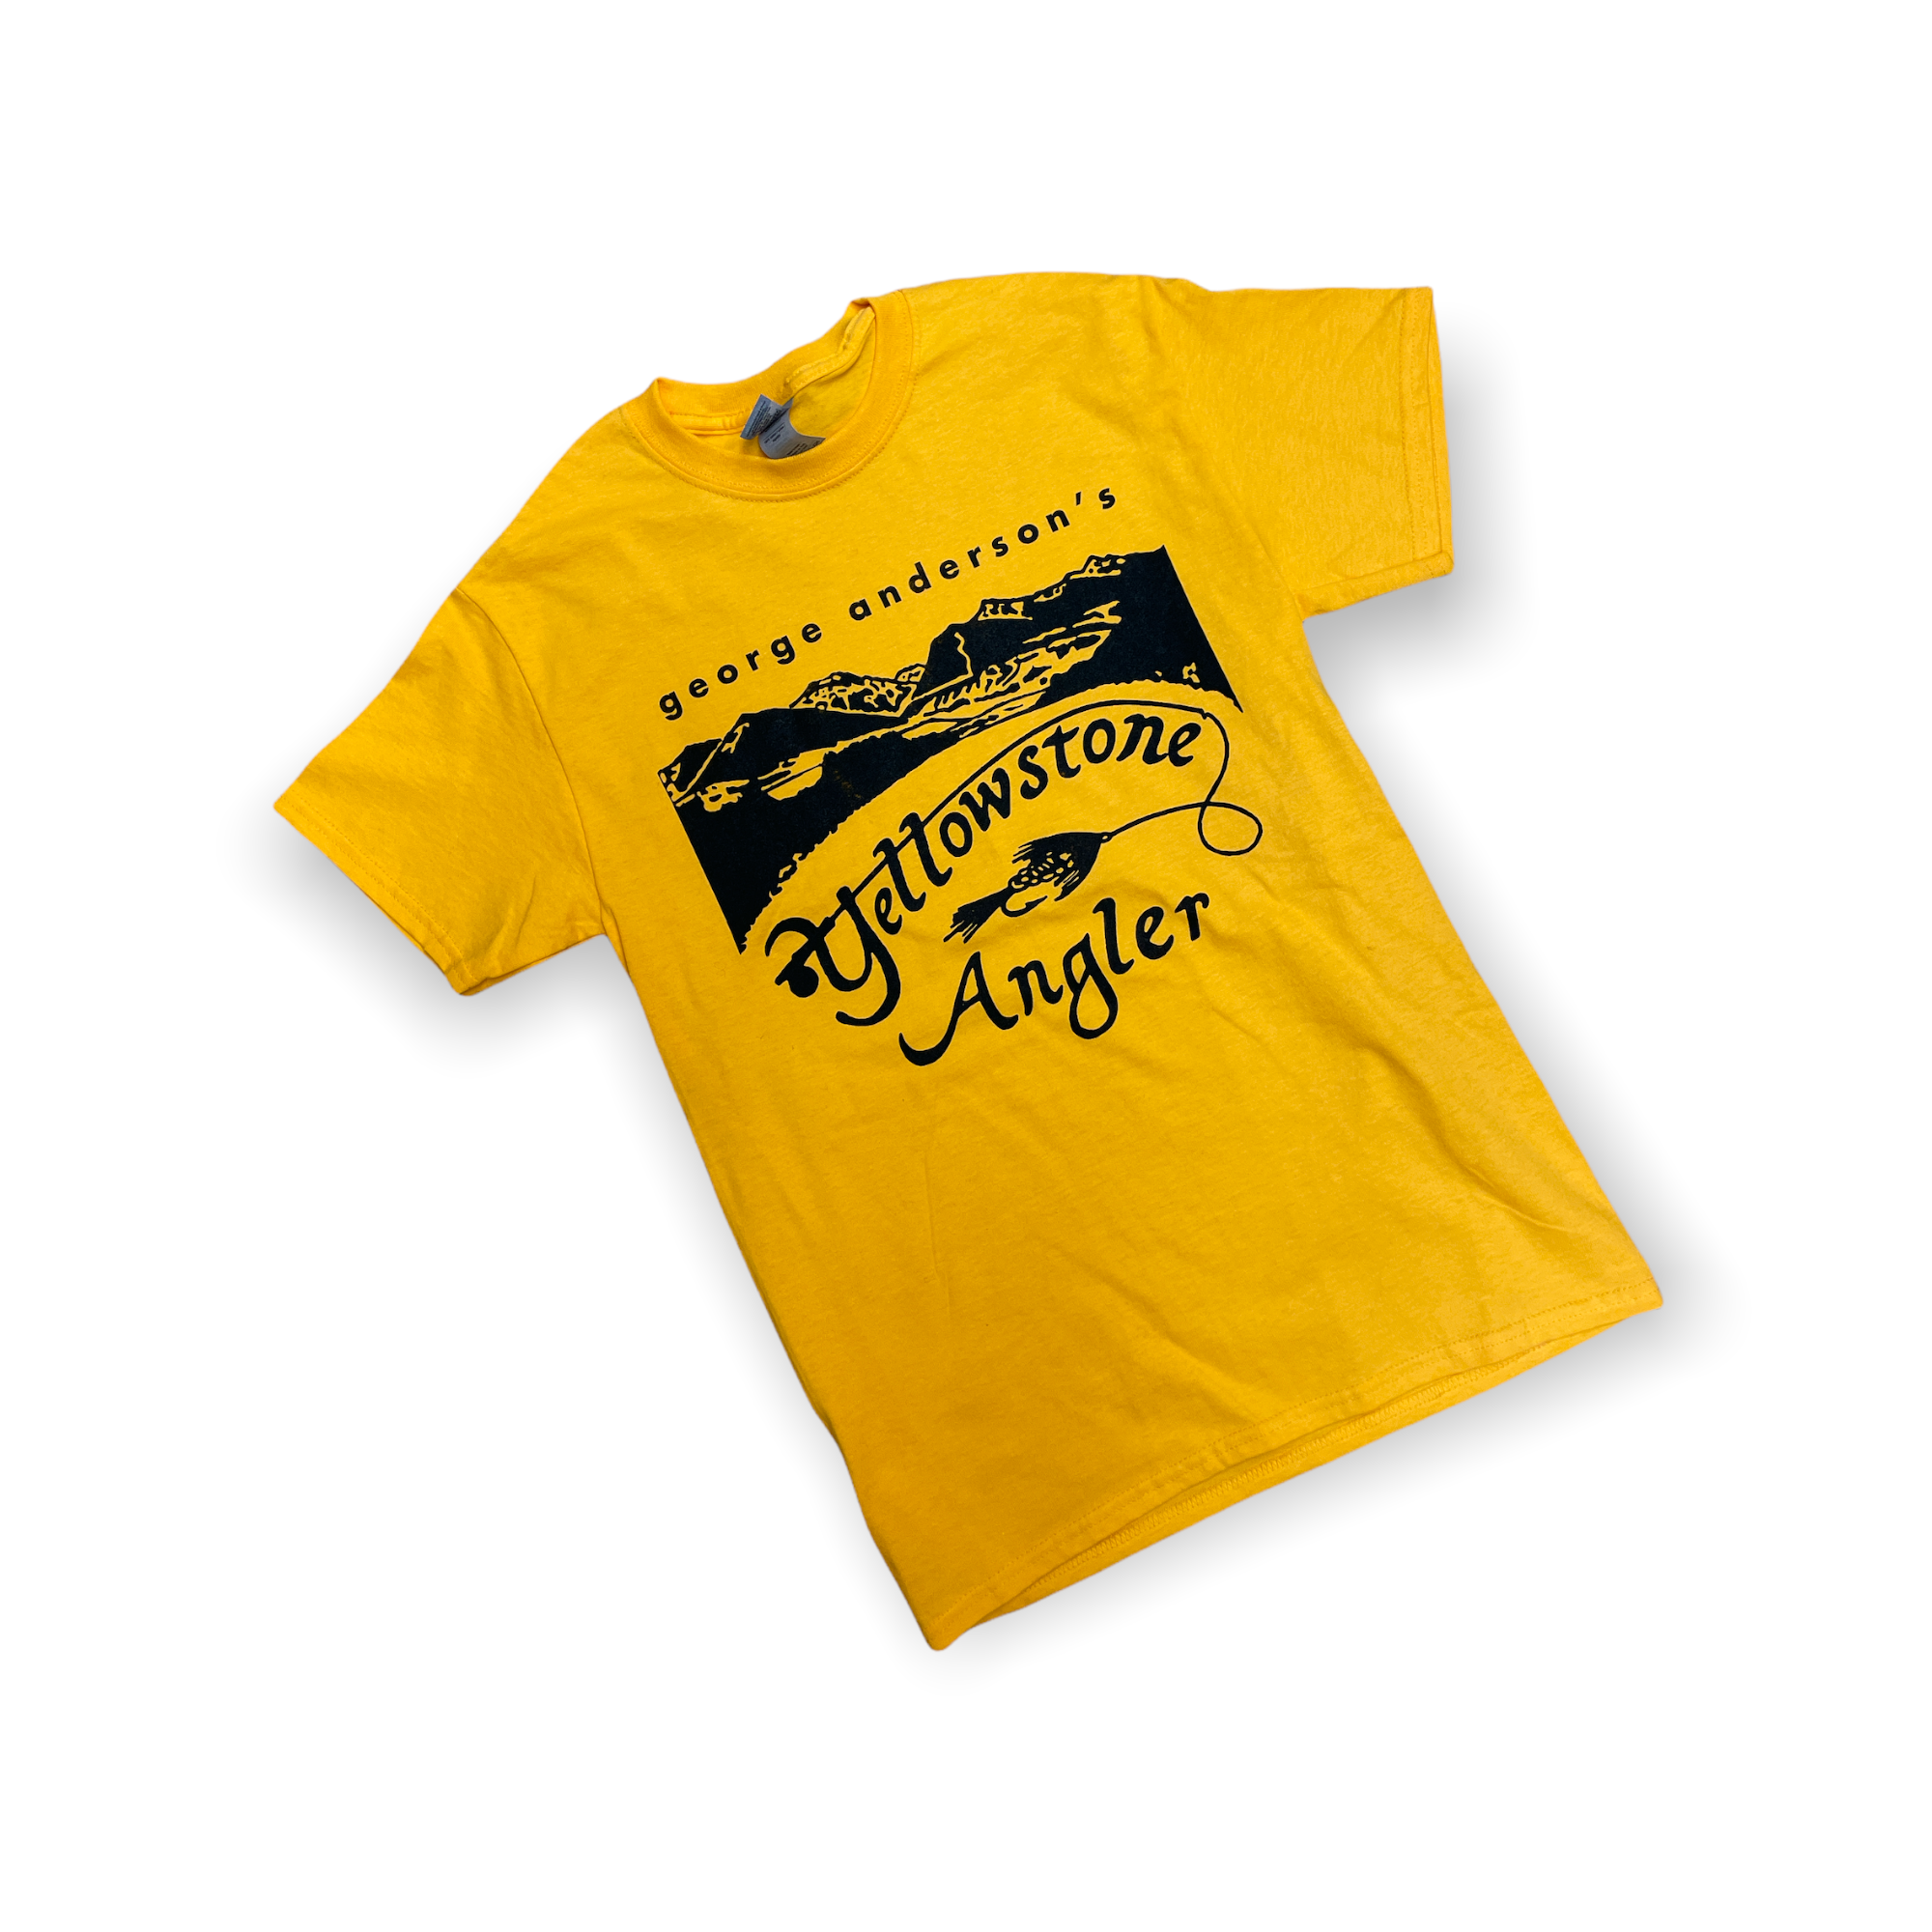 Retro angler - fishing and fishing shirt Unisex Sweatshirt